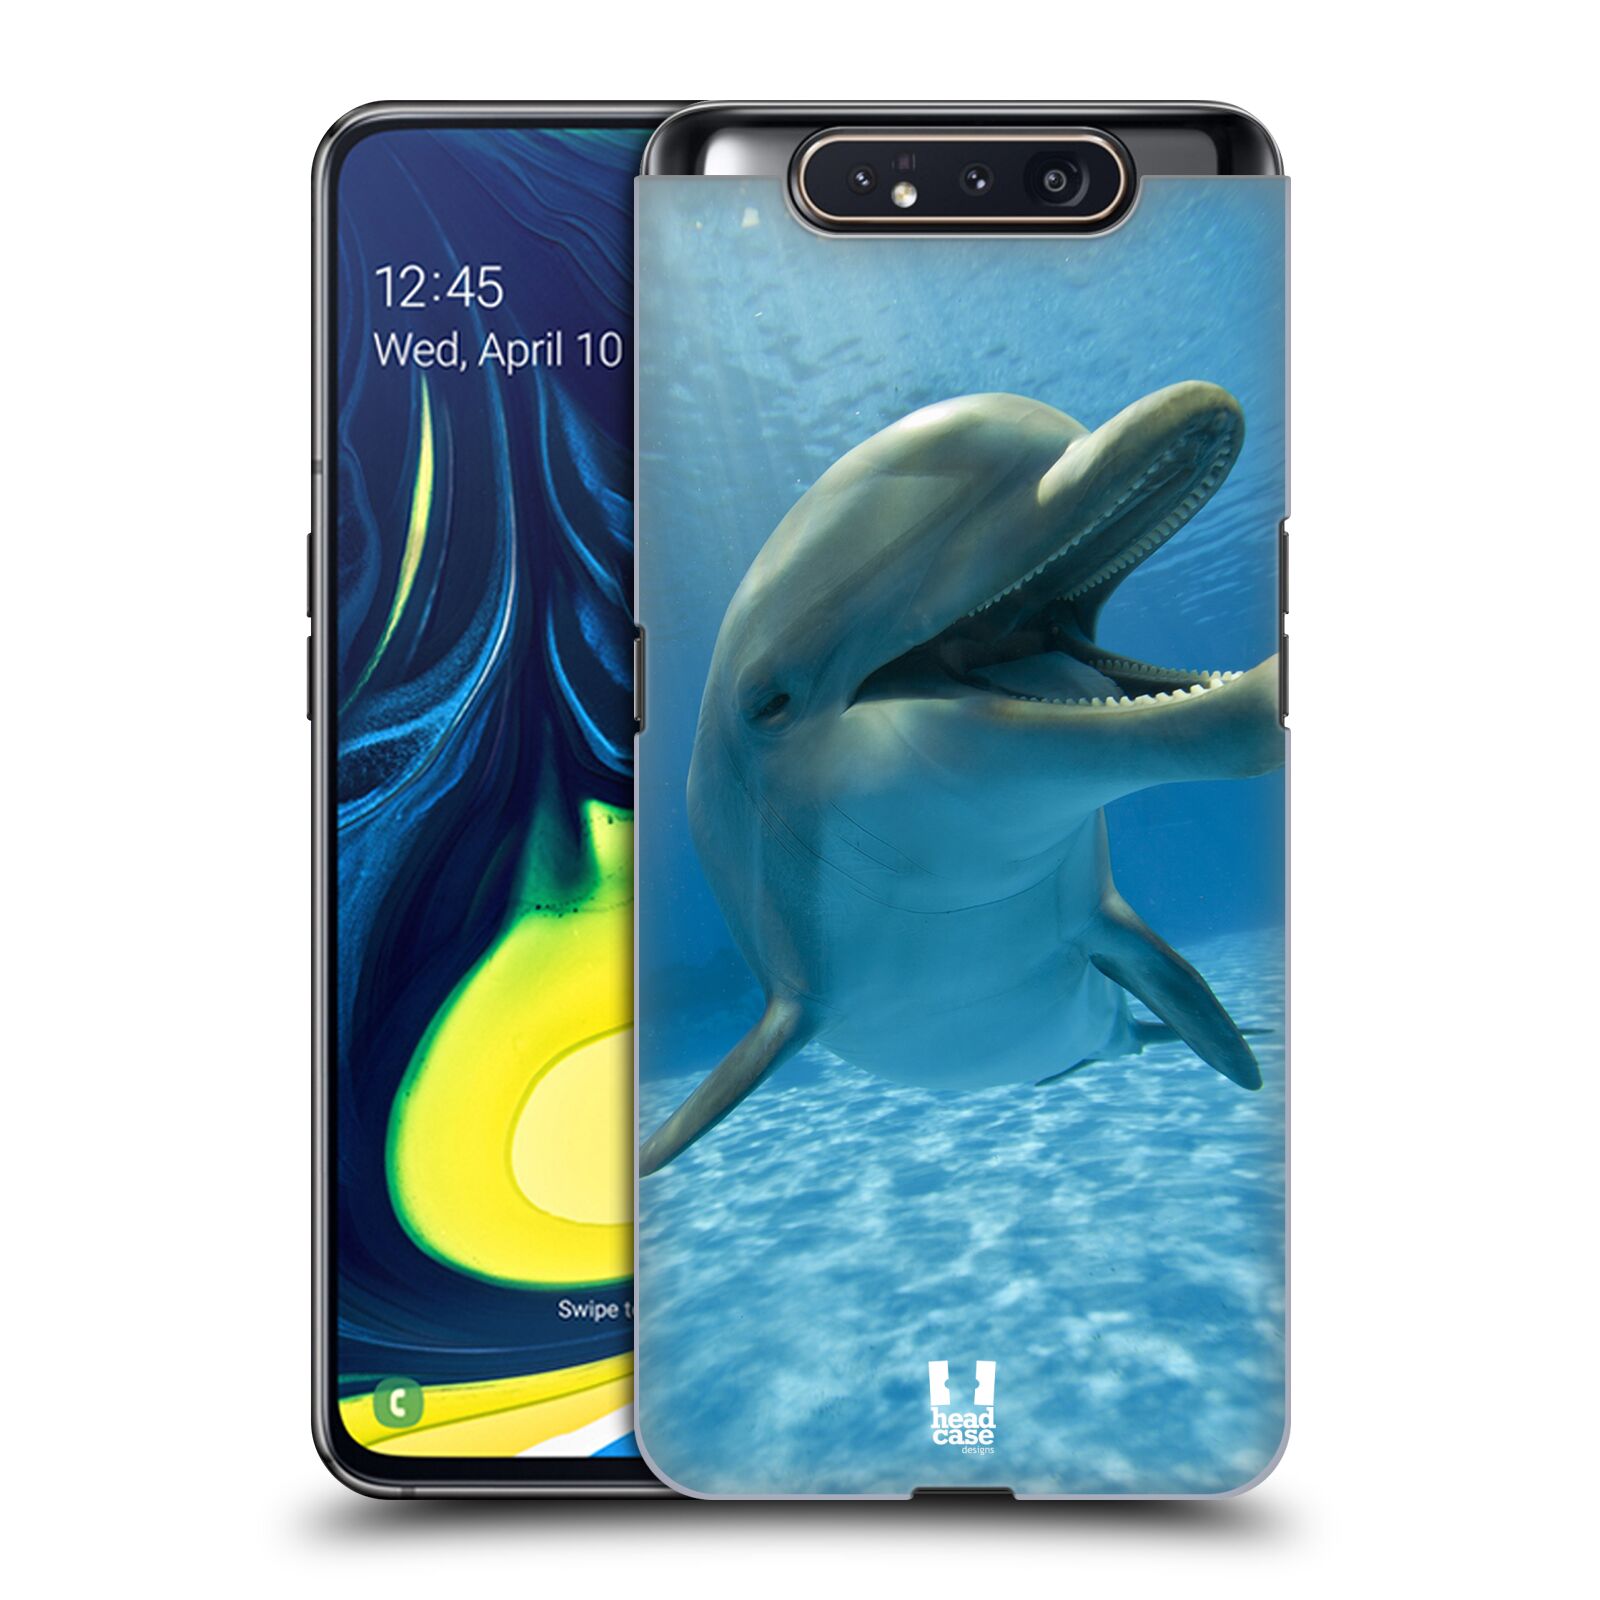 Zadní obal pro mobil Samsung Galaxy A80 - HEAD CASE - Svět zvířat delfín v moři